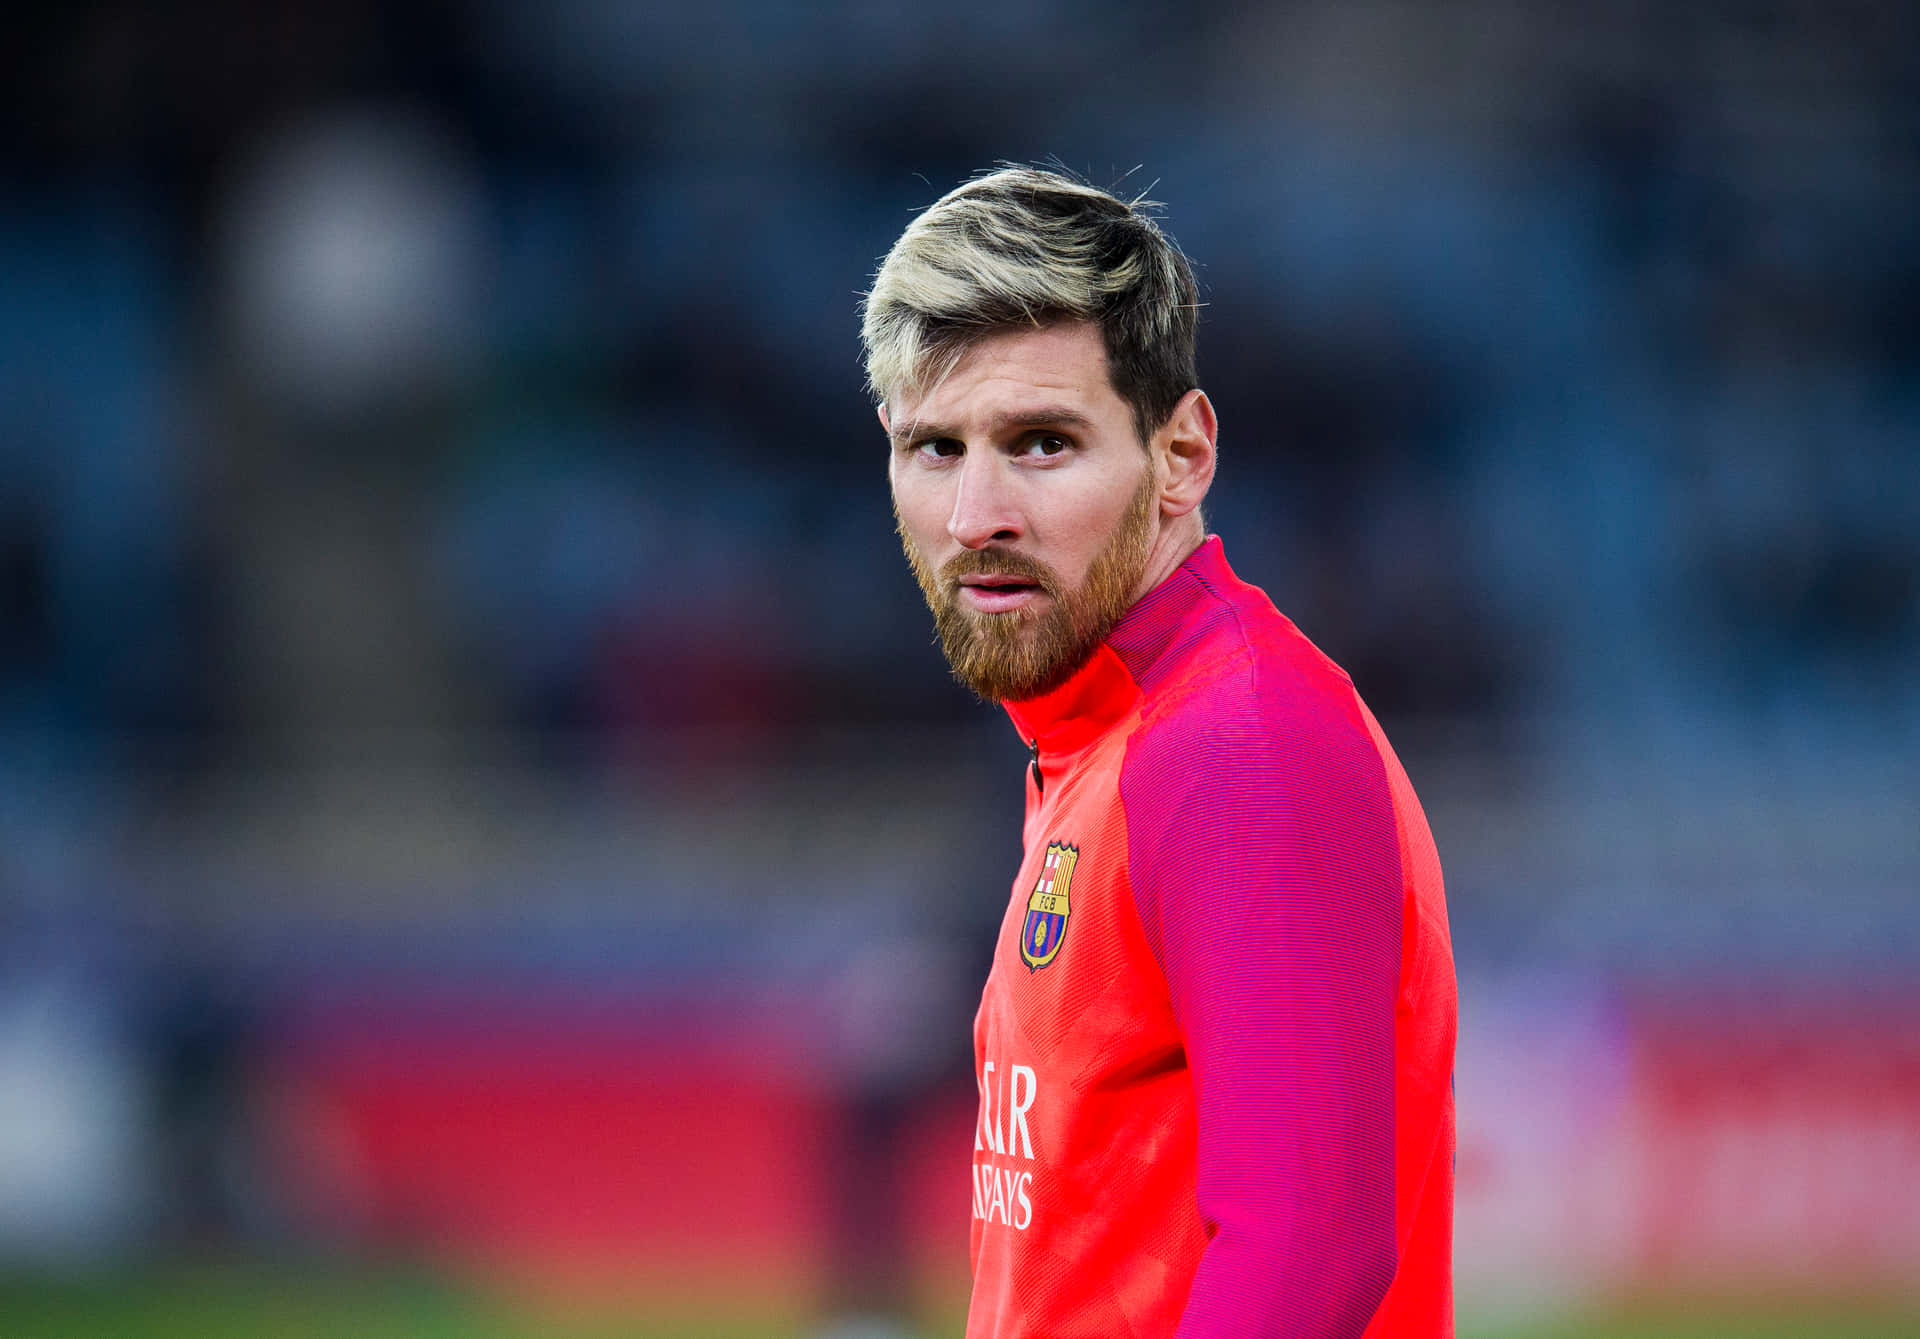 Denubestridelige Bedste - Lionel Messi.